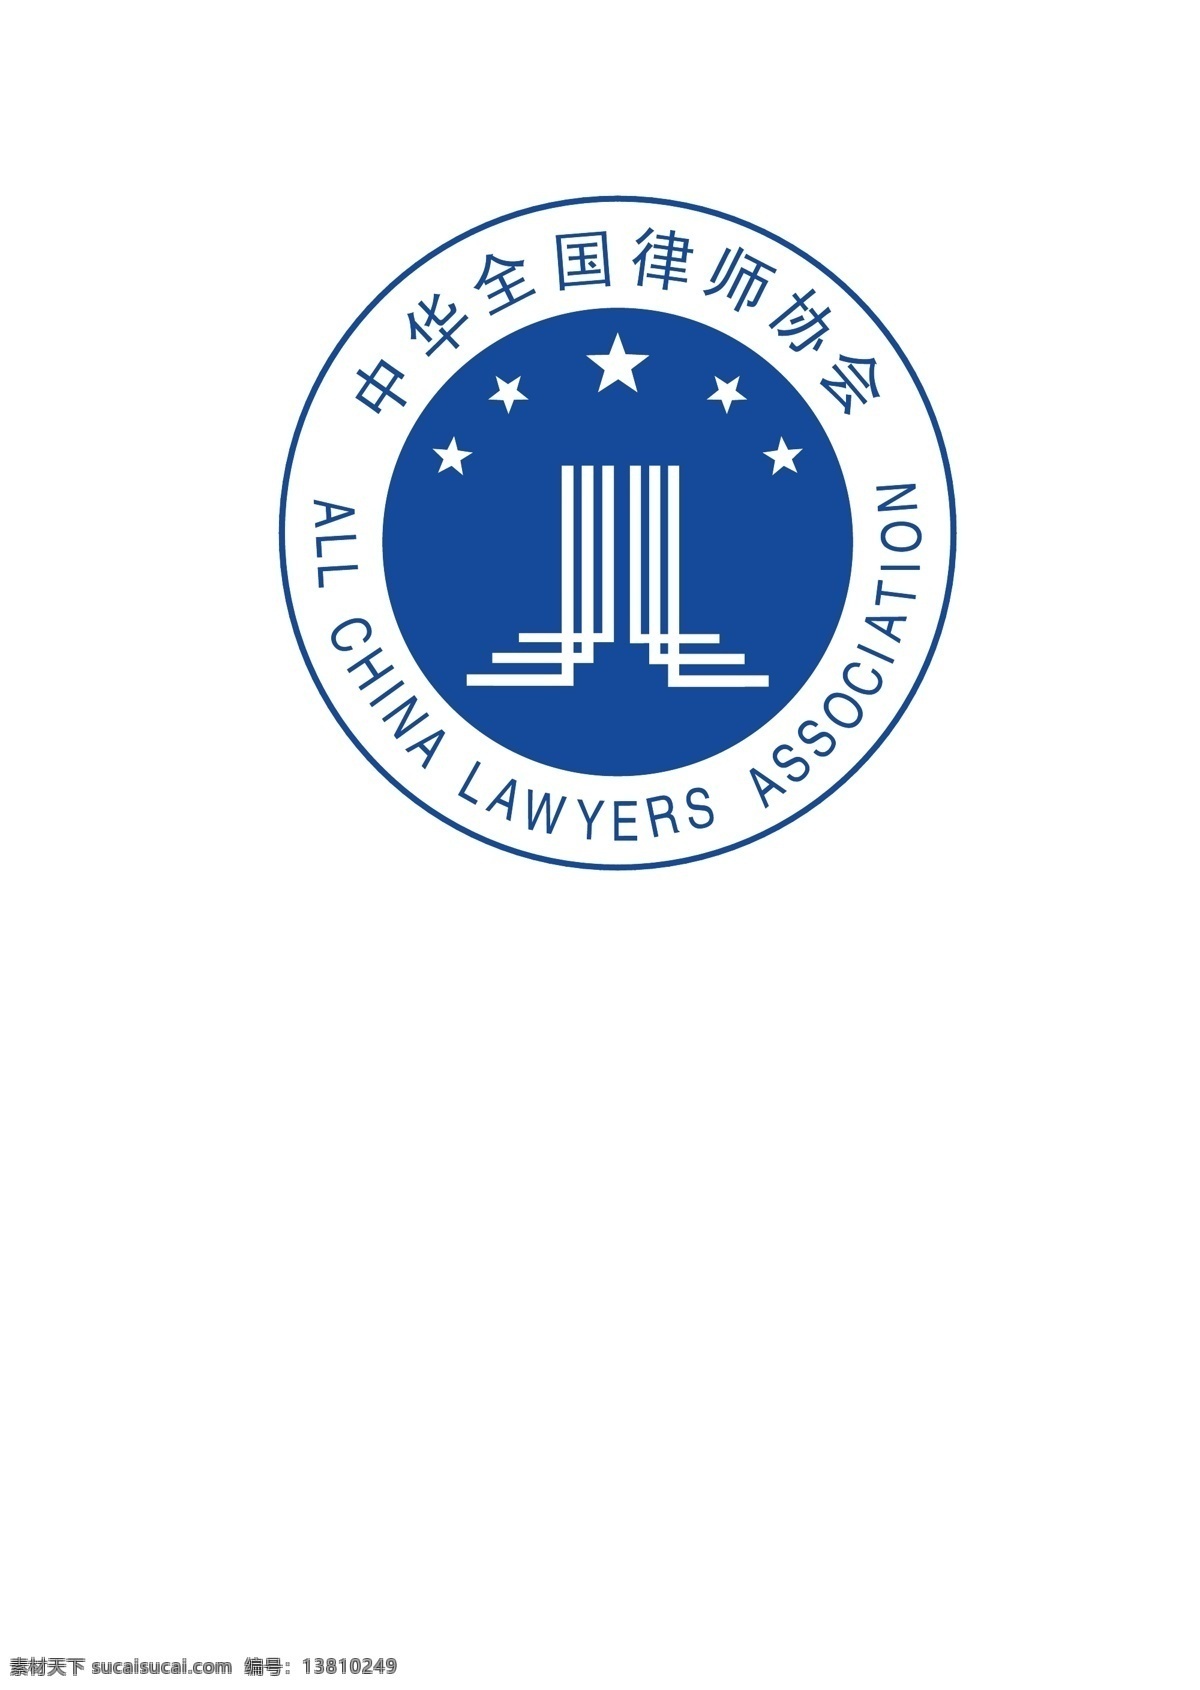 中华全国律师协会 logo 中华全国律师 协会logo 协会标志 全国律师协会 会徽 logo设计